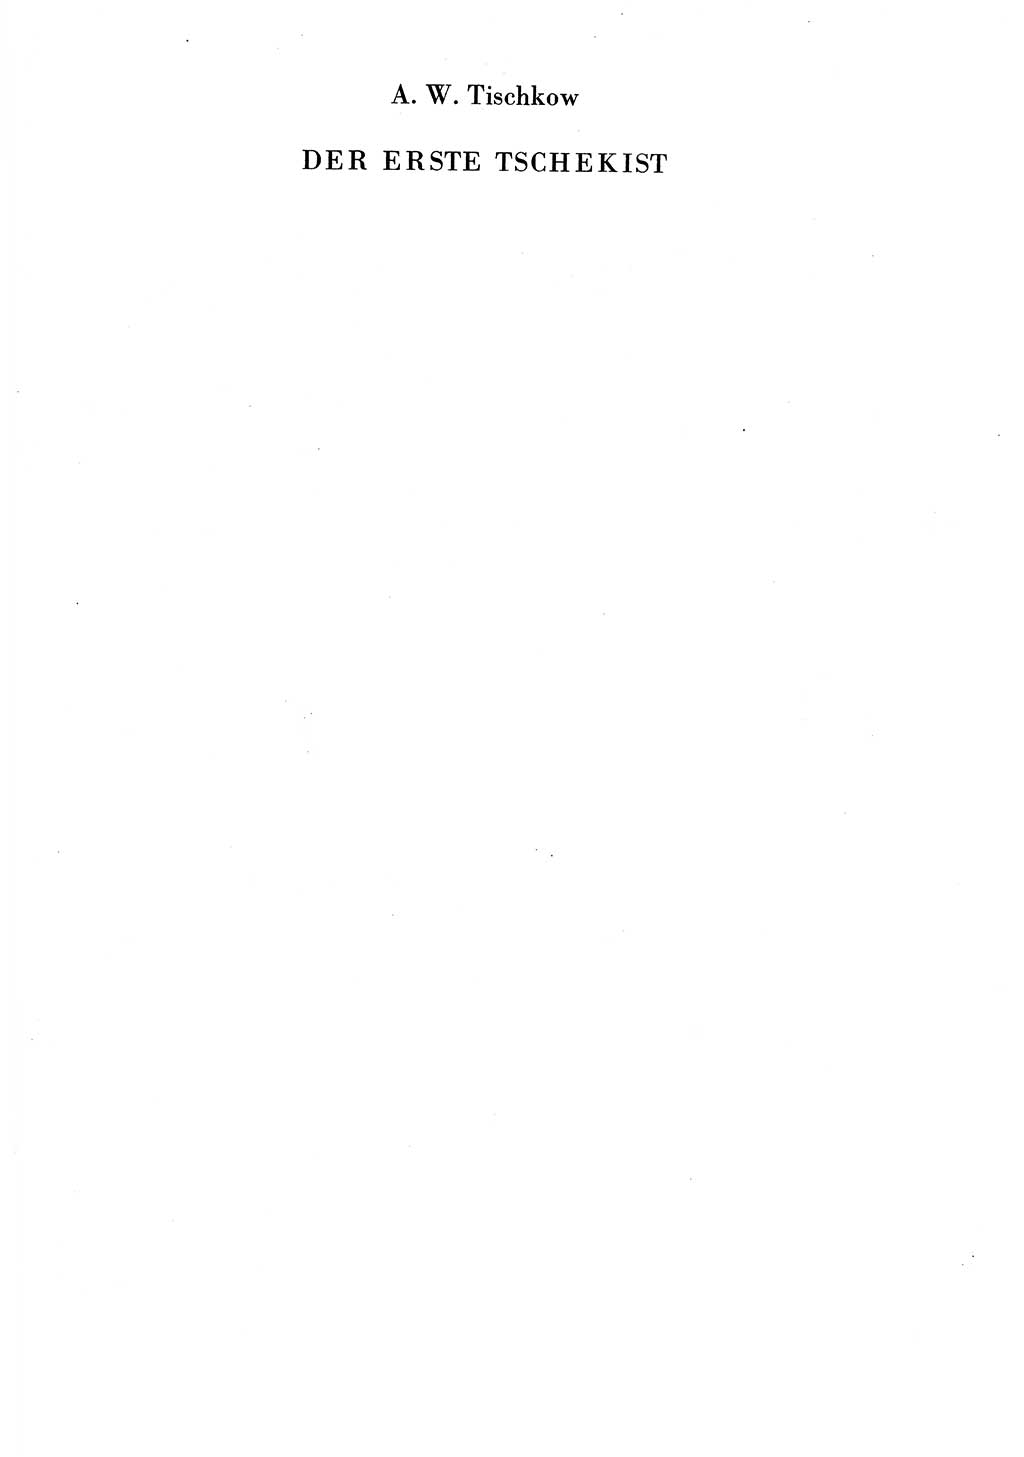 Der erste Tschekist, A. W. Tischkow [Militärverlag des Ministeriums für Verteidigung der UdSSR, Moskau 1968], Ministerium für Staatssicherheit (MfS) [Deutsche Demokratische Republik (DDR)], Juristische Hochschule (JHS) Potsdam 1969, Seite 1 (Tschekist MfS JHS DDR 1969, S. 1)